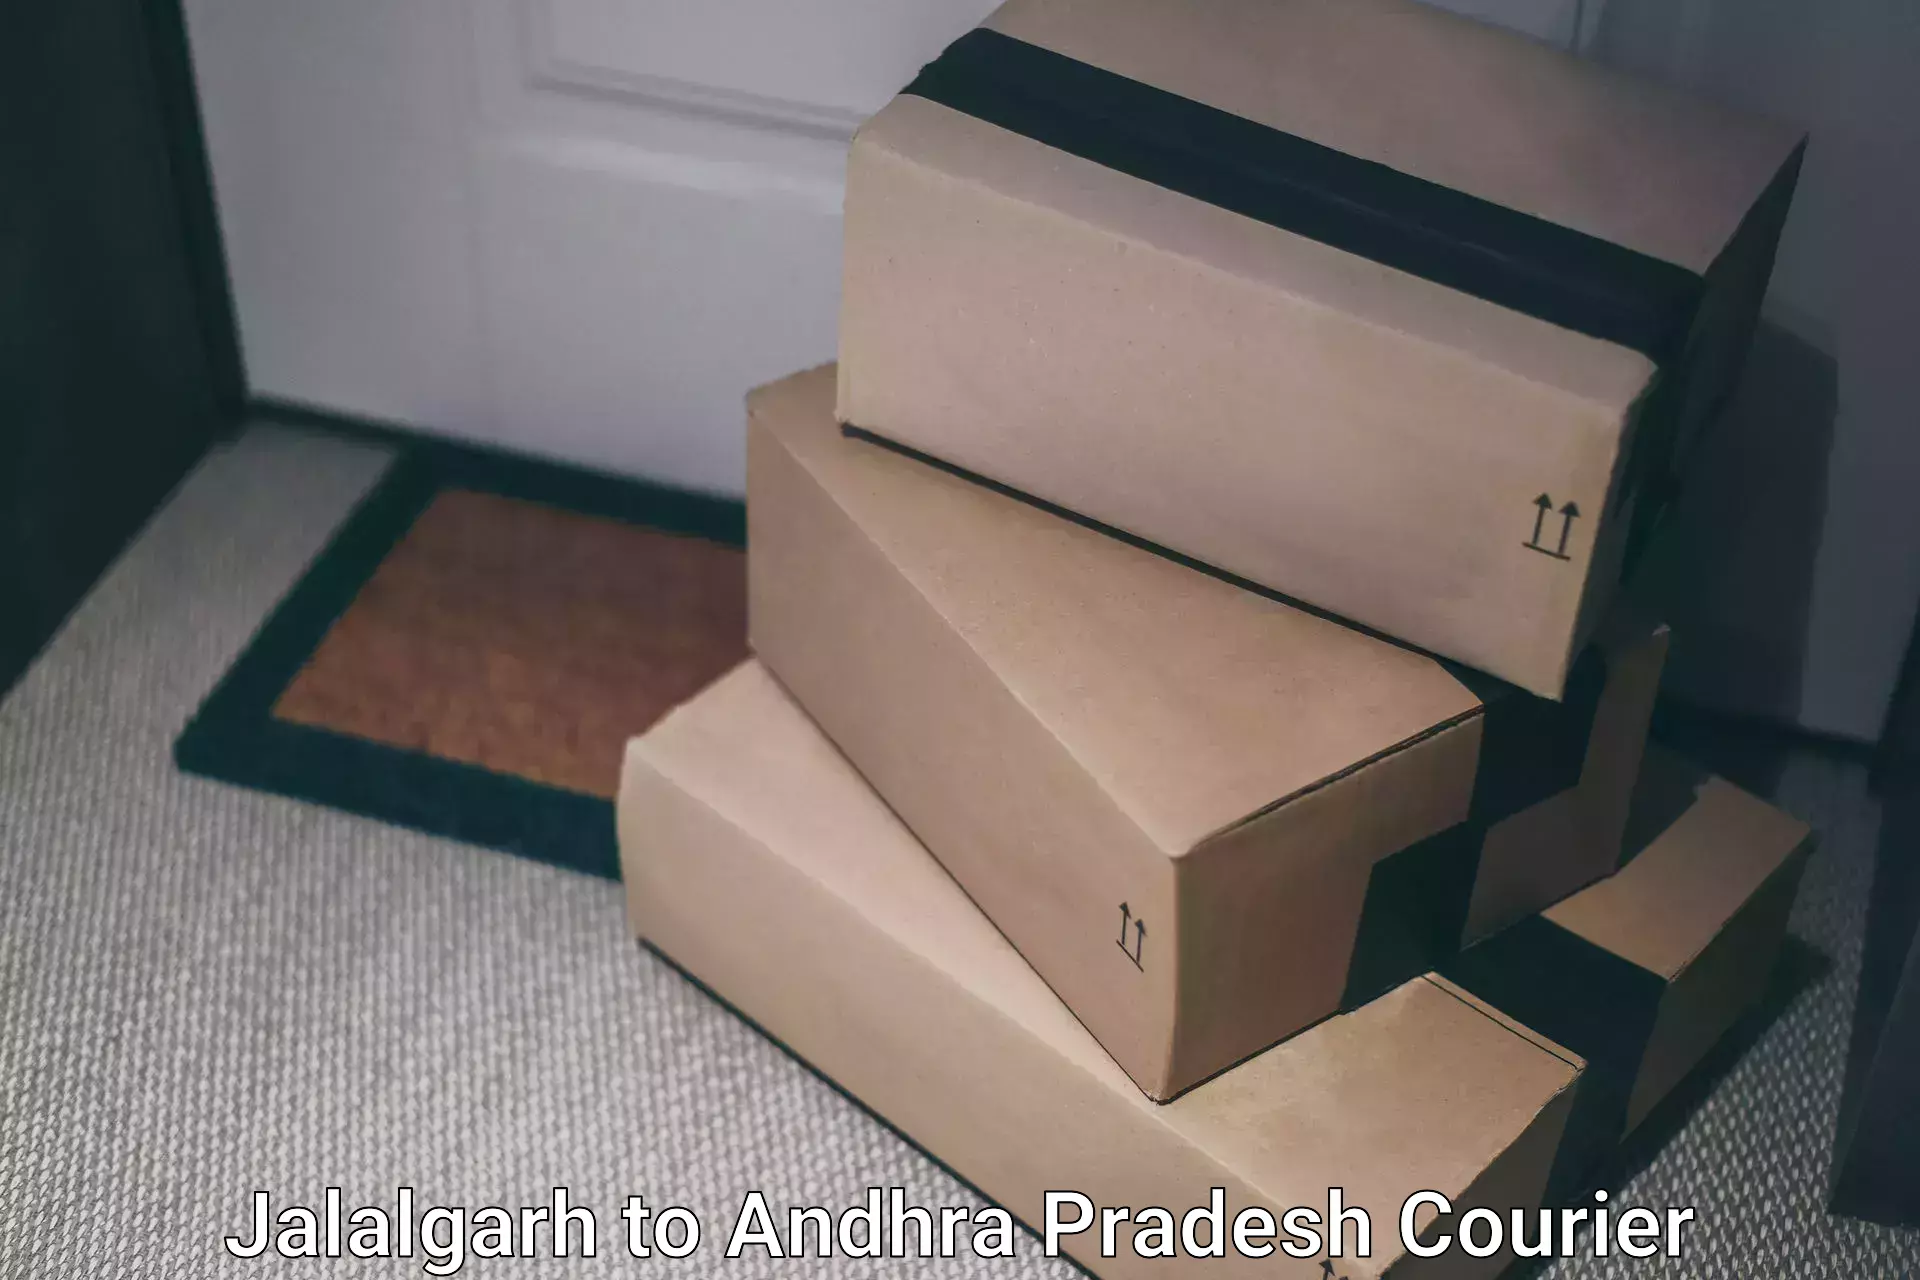 Reliable courier service Jalalgarh to Kaikaluru